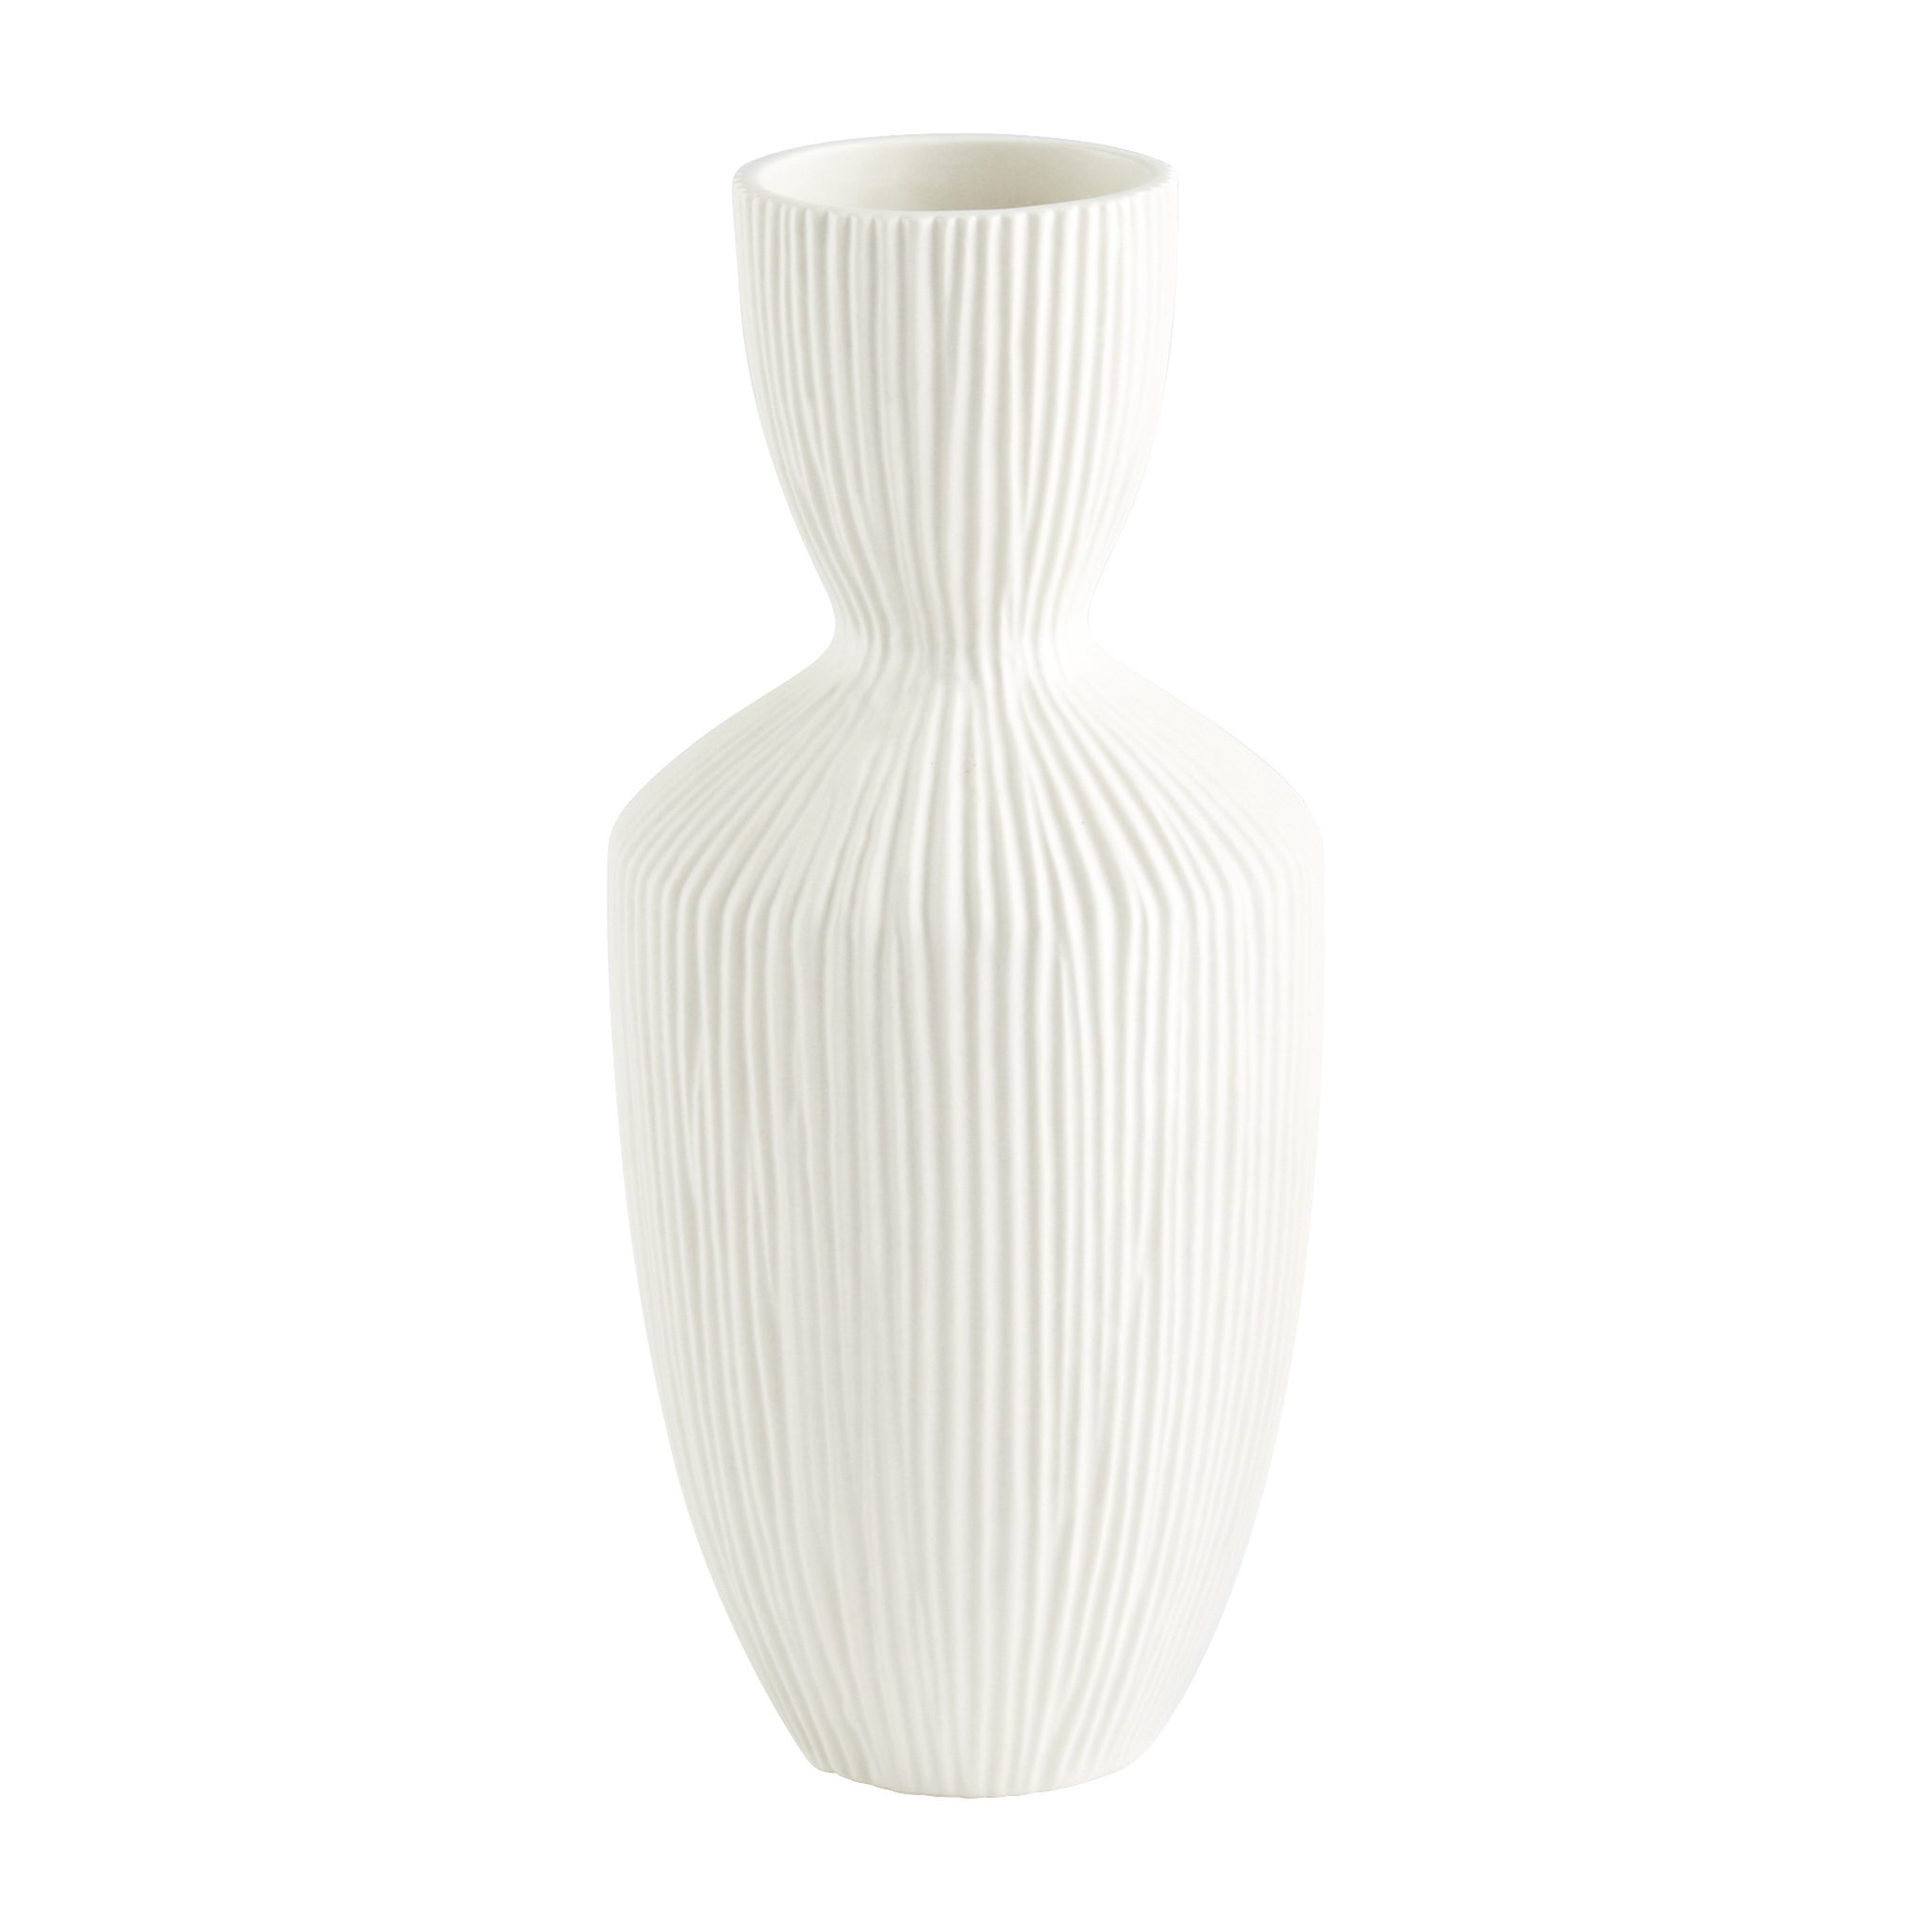 新発売の Cyan Design Blue Planters  Vases Vase Quest Large 花瓶、花器 -  www.oroagri.eu